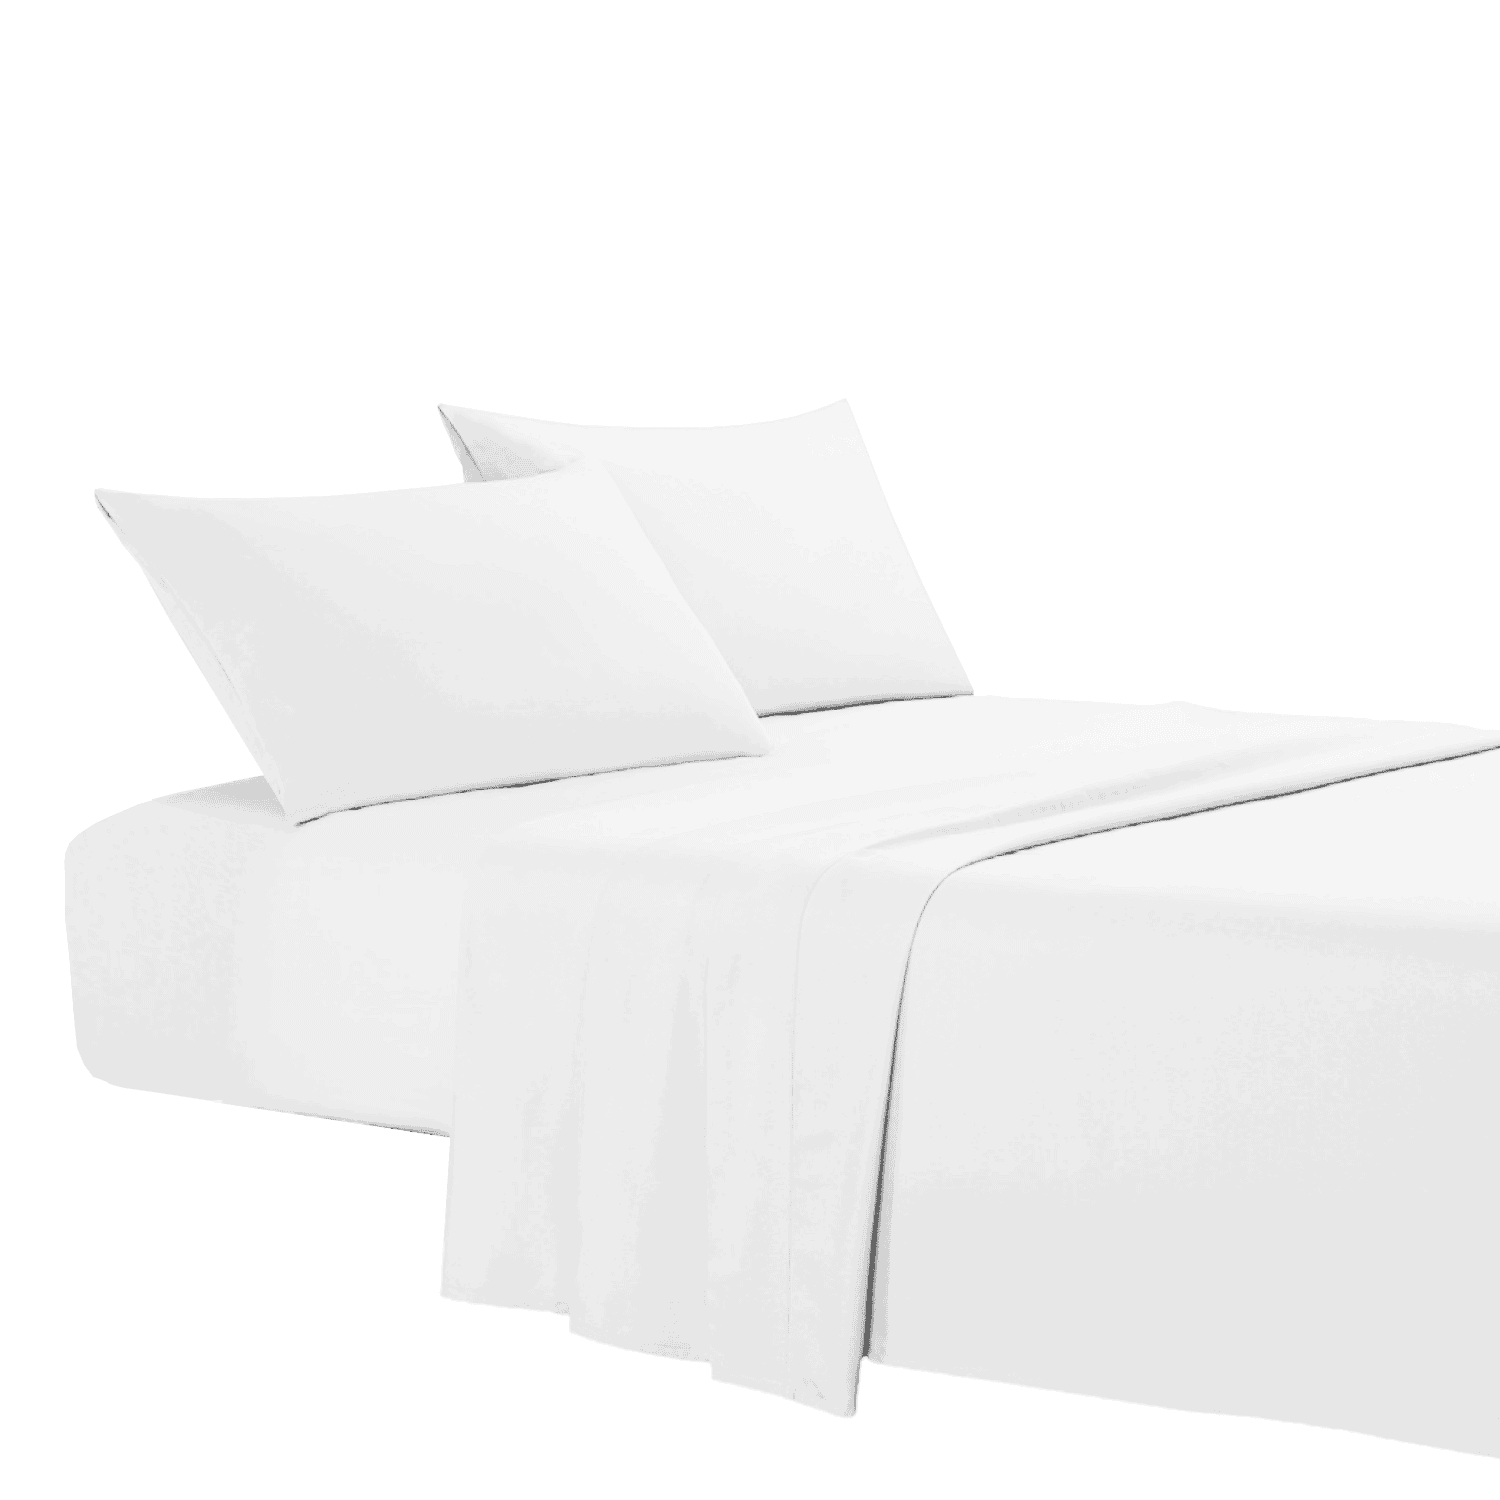 bianco-coloratissimi-completo-lenzuola-puro-cotone-tinta-unita-fold-letto